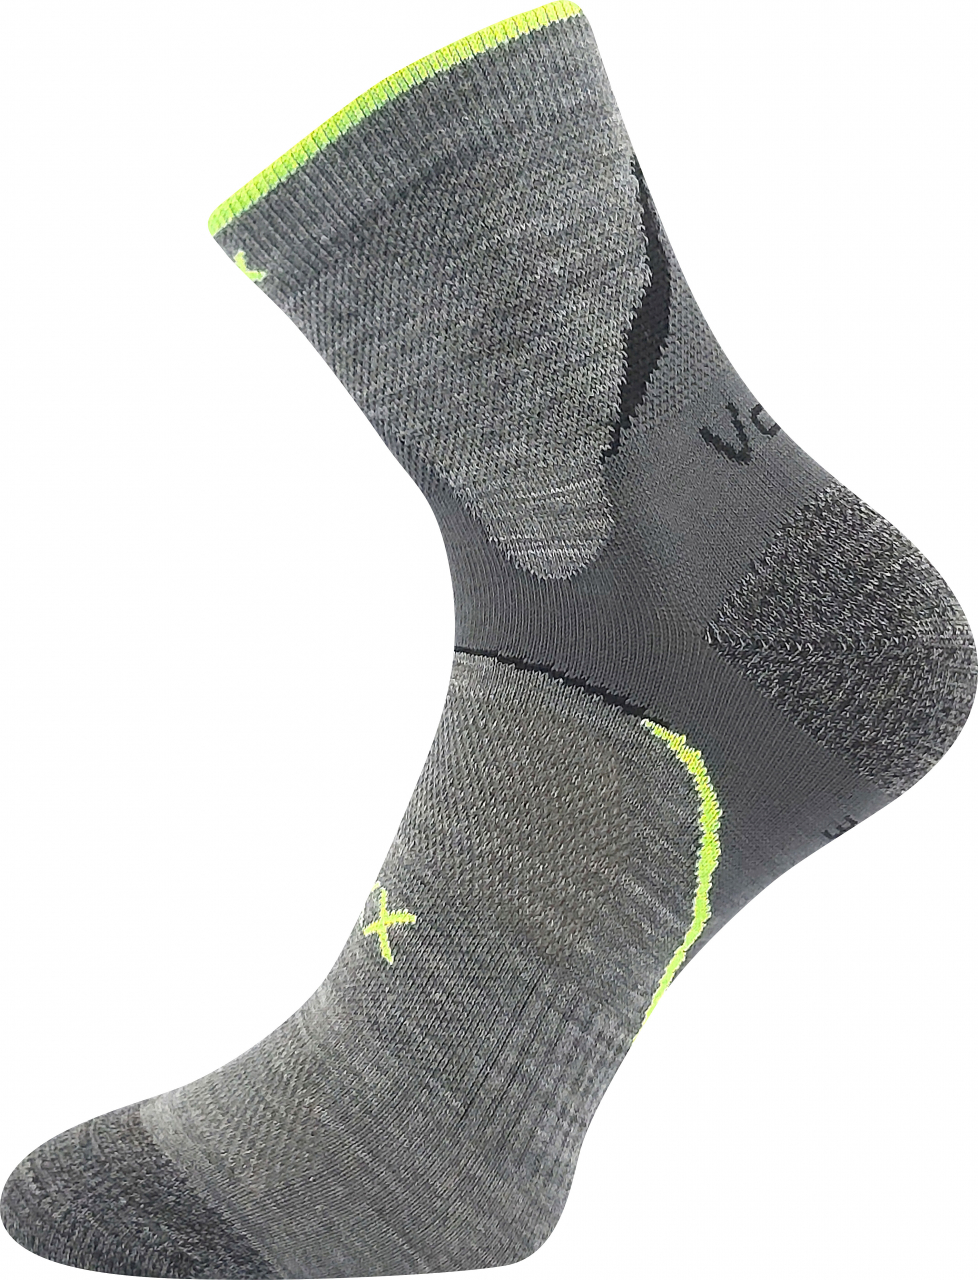 Ponožky antibakteriální Voxx Maxter silproX - světle šedé, 43-46